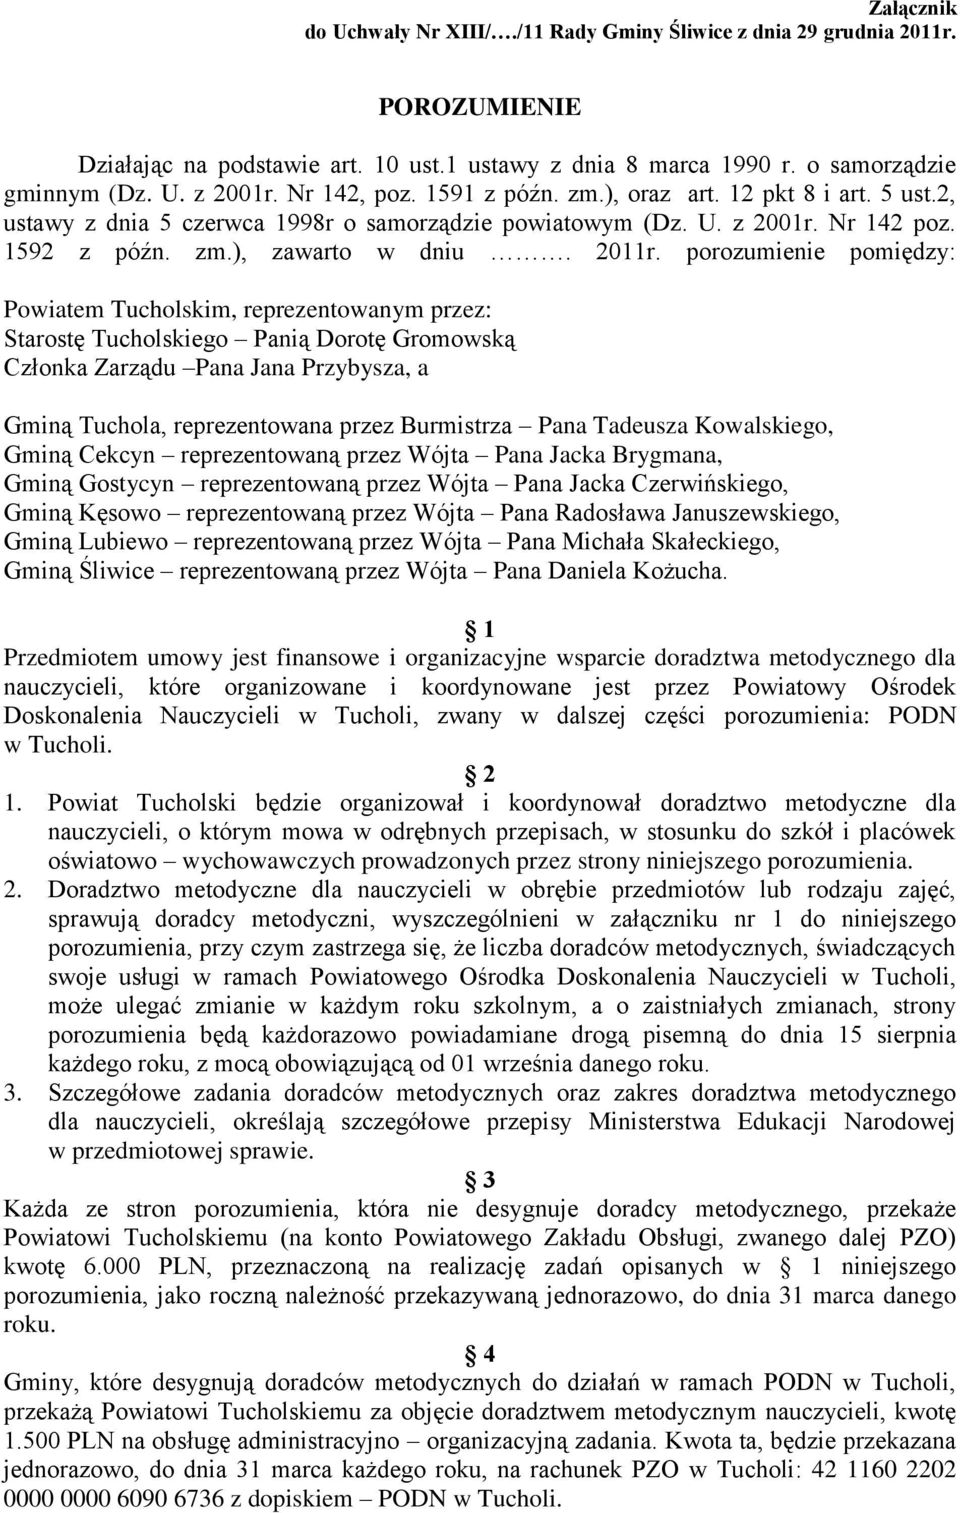 porozumienie pomiędzy: Powiatem Tucholskim, reprezentowanym przez: Starostę Tucholskiego Panią Dorotę Gromowską Członka Zarządu Pana Jana Przybysza, a Gminą Tuchola, reprezentowana przez Burmistrza